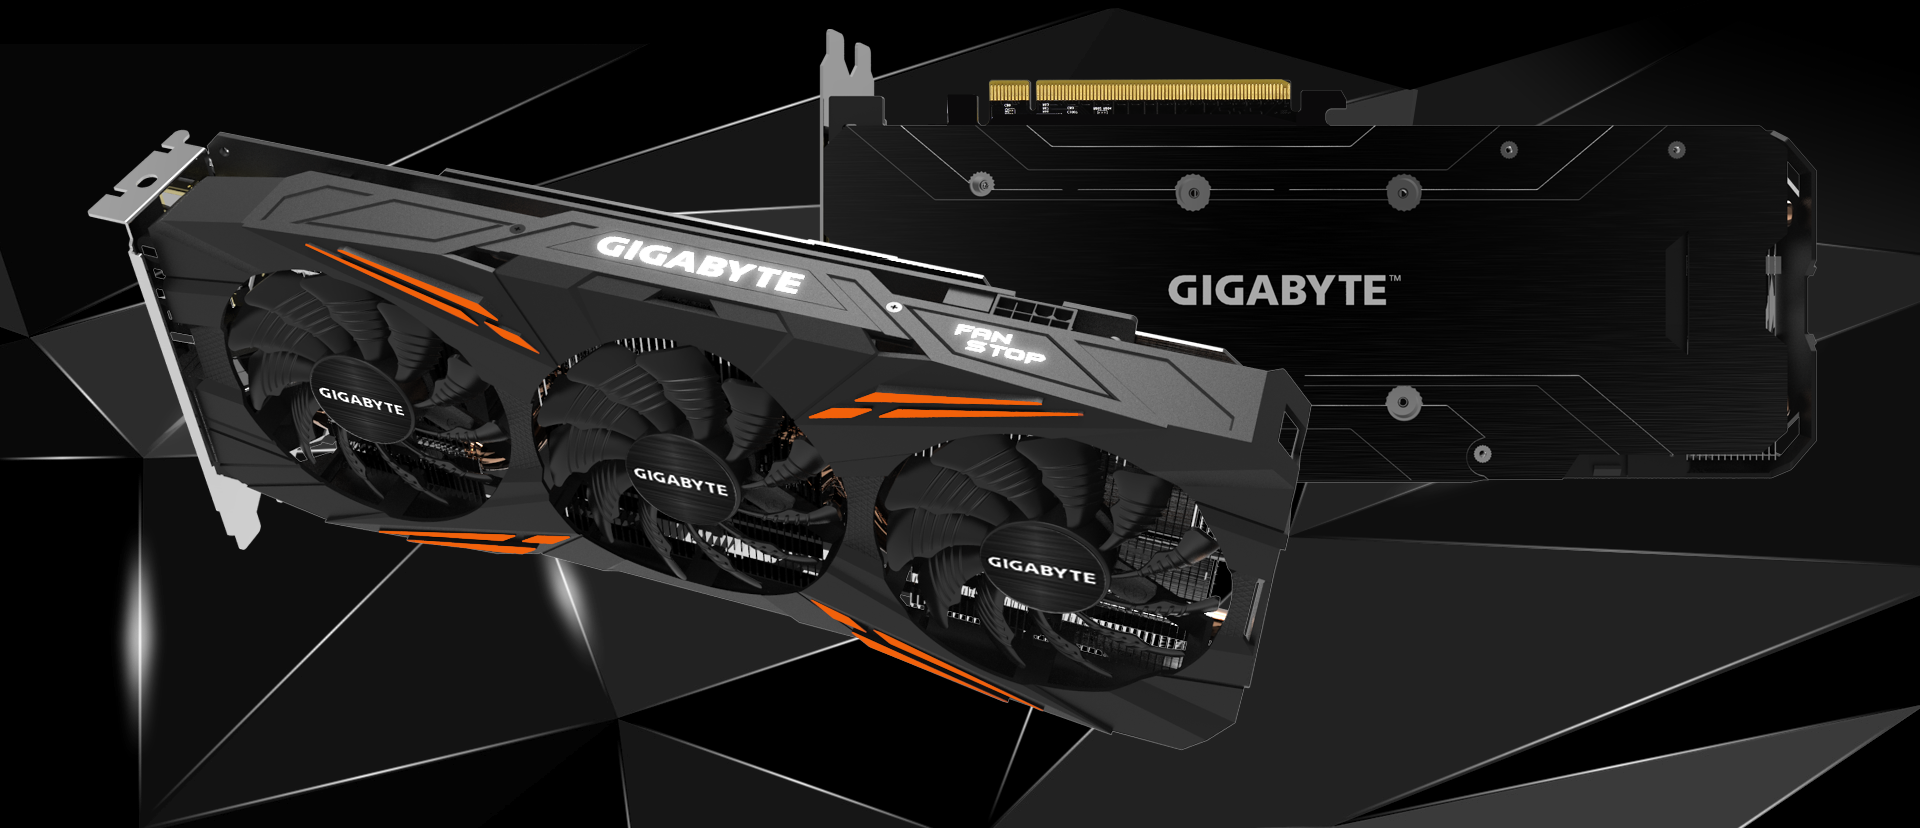 【期間限定値下げ中!!!】GIGABYTE GeForce GTX1070Ti